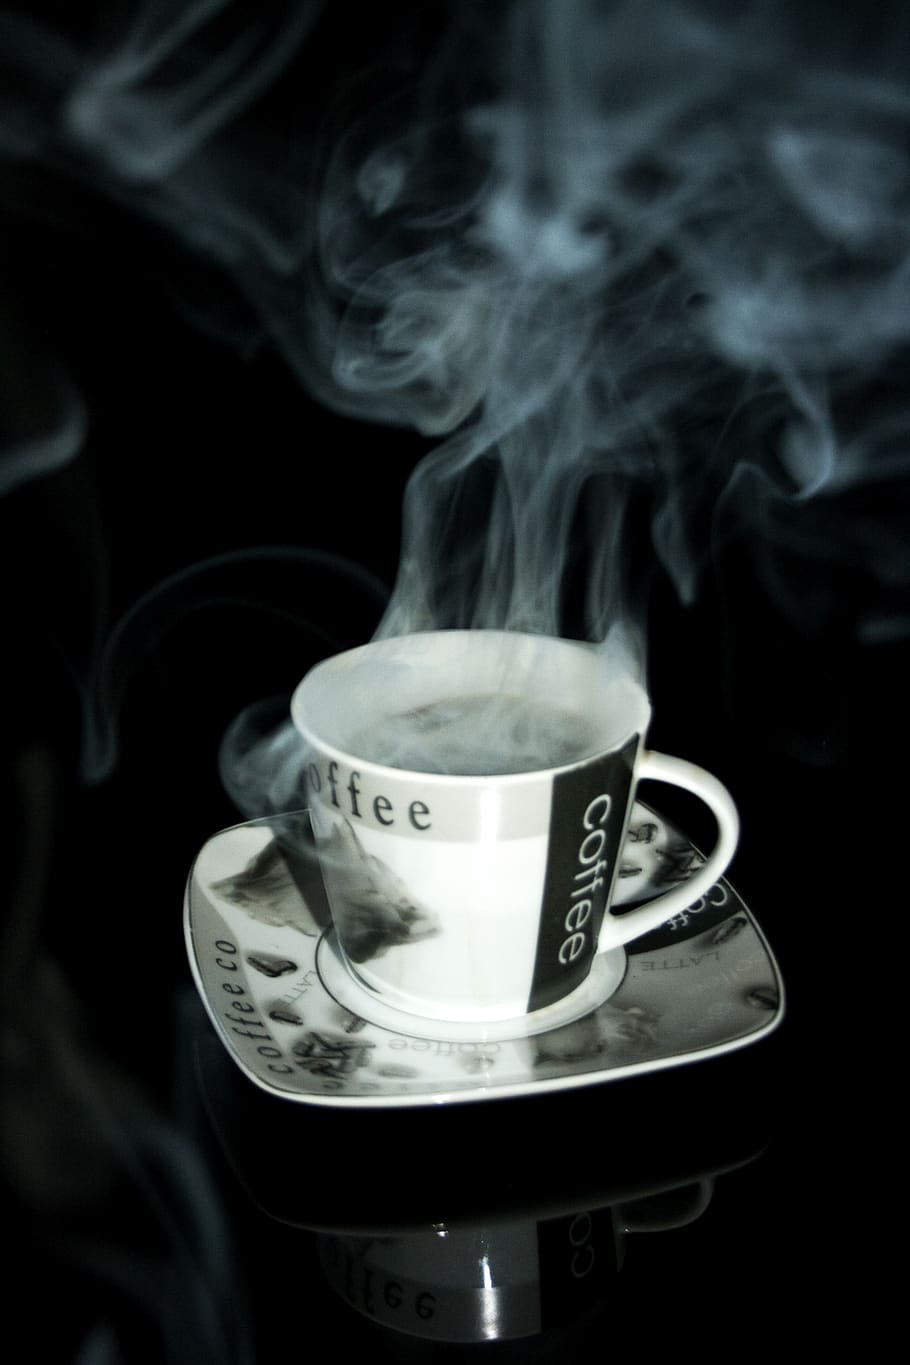 café, xícara de chá, o prato, cafeteira, uma xícara de café, porcelana, cafeína, fumaça - estrutura física, xícara, calor - temperatura